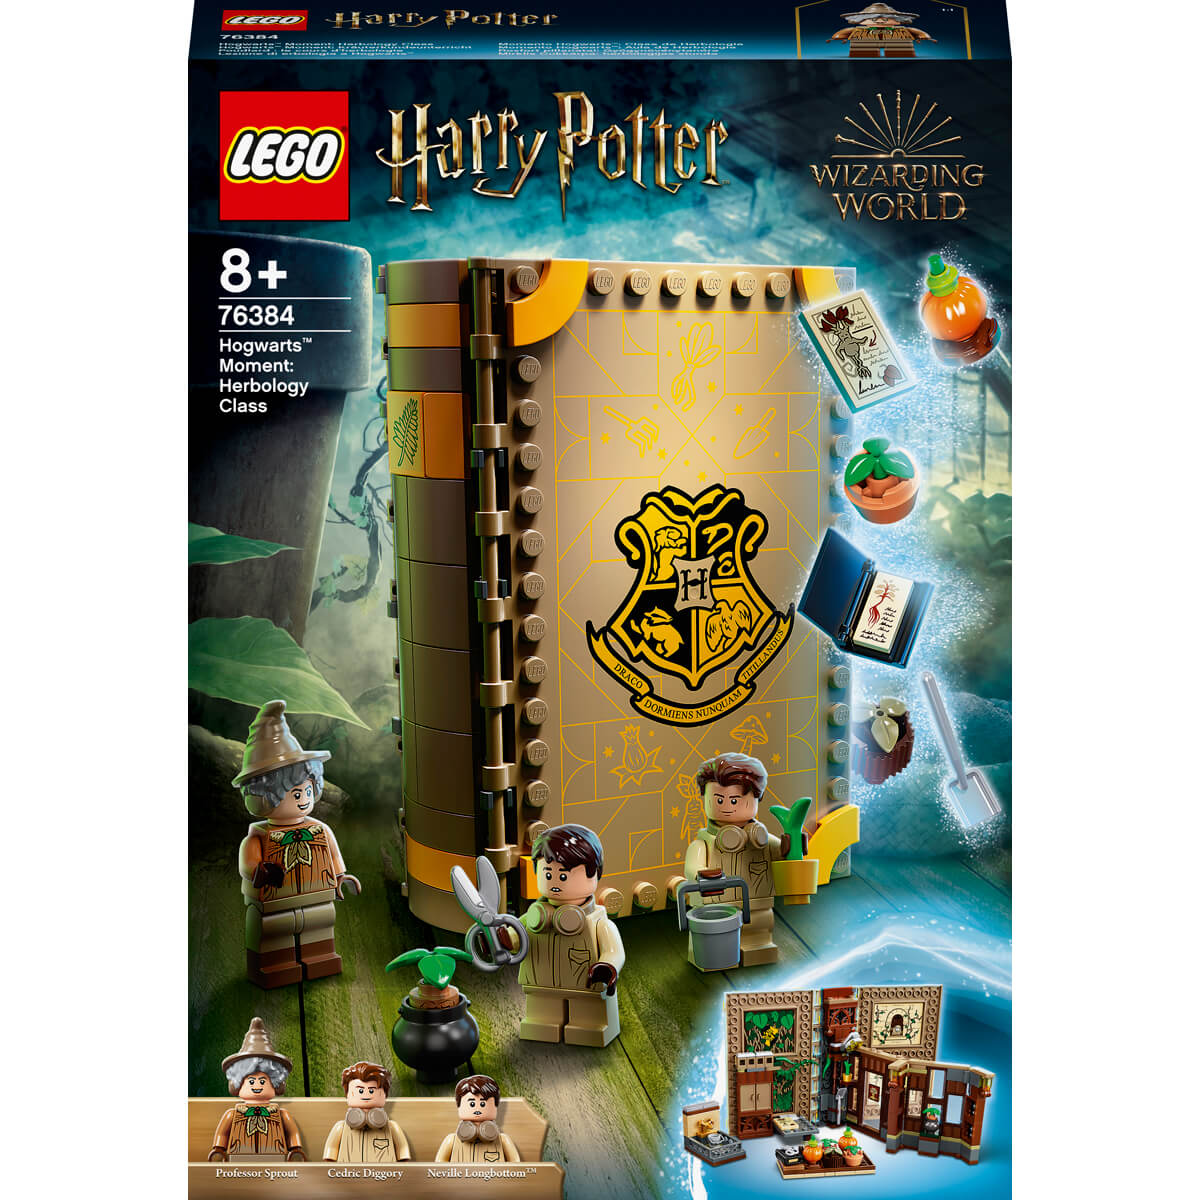 ΠΑΙΔΙ | Παιχνίδια | LEGO | HARRY POTER TM 76384 Hogwarts™ Moment: Herbology Class